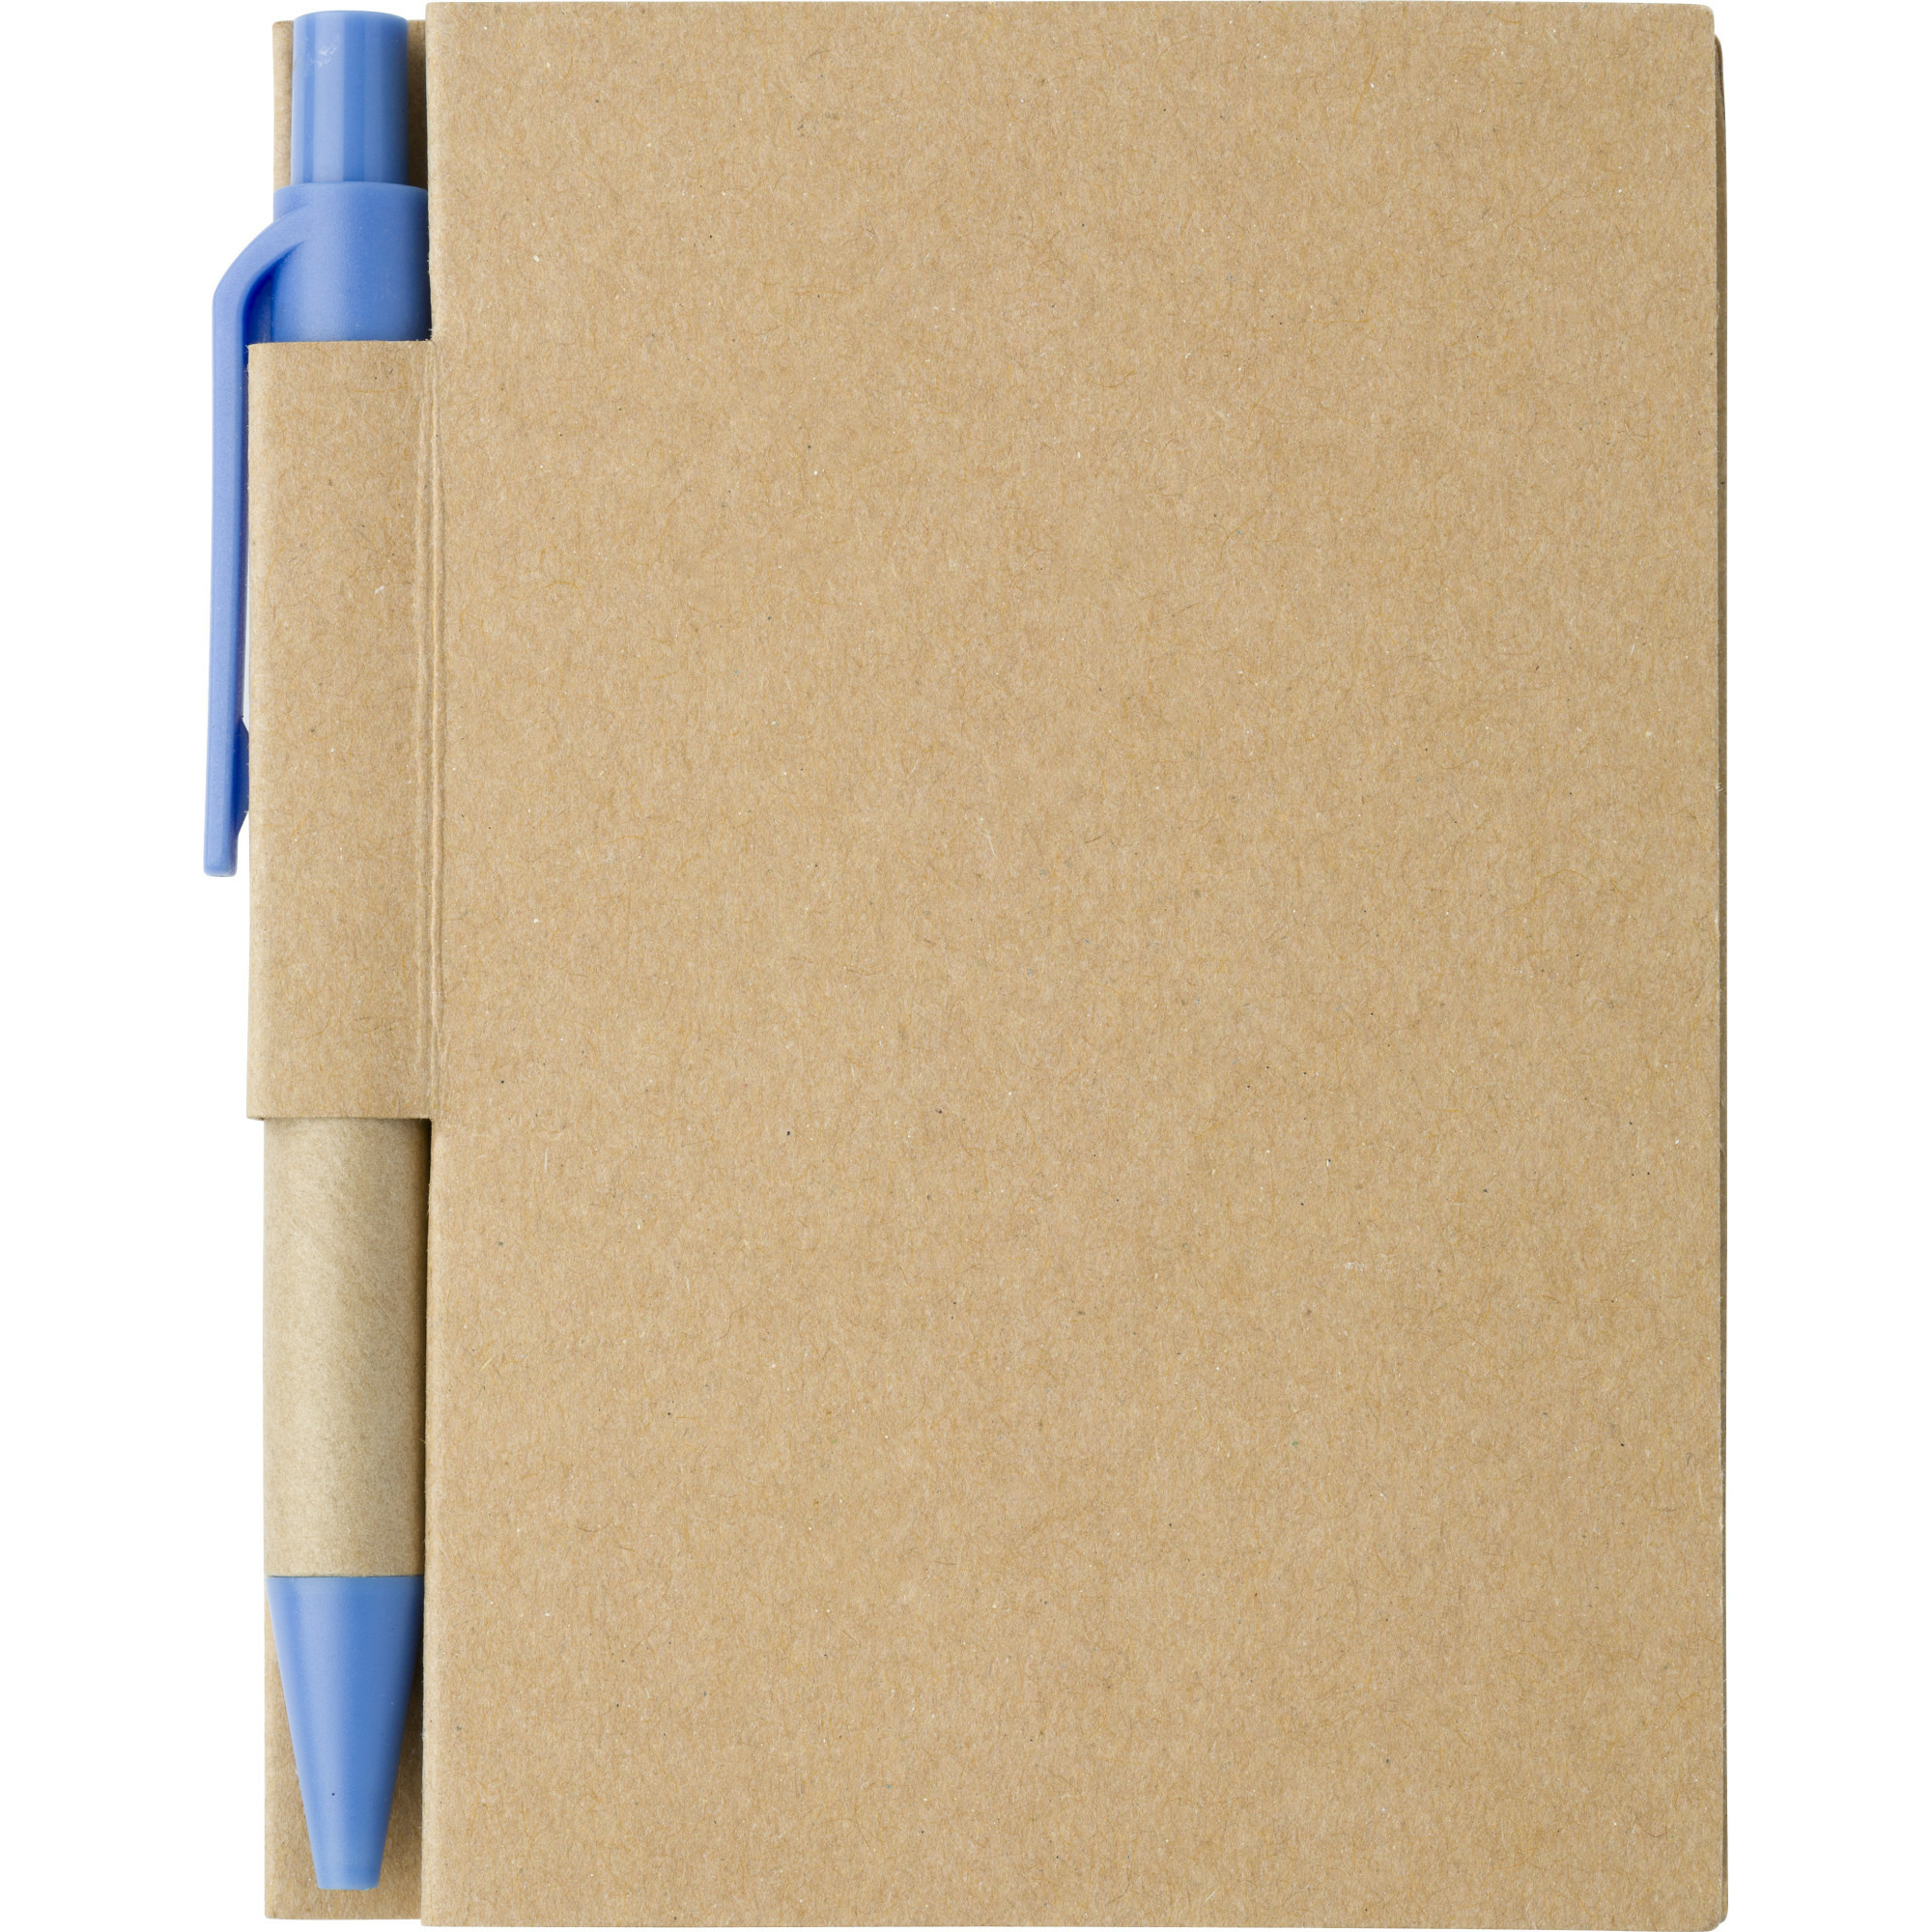 Notitie-opschrijf boekje met balpen harde kaft beige-blauw 11x8cm 80blz gelinieerd